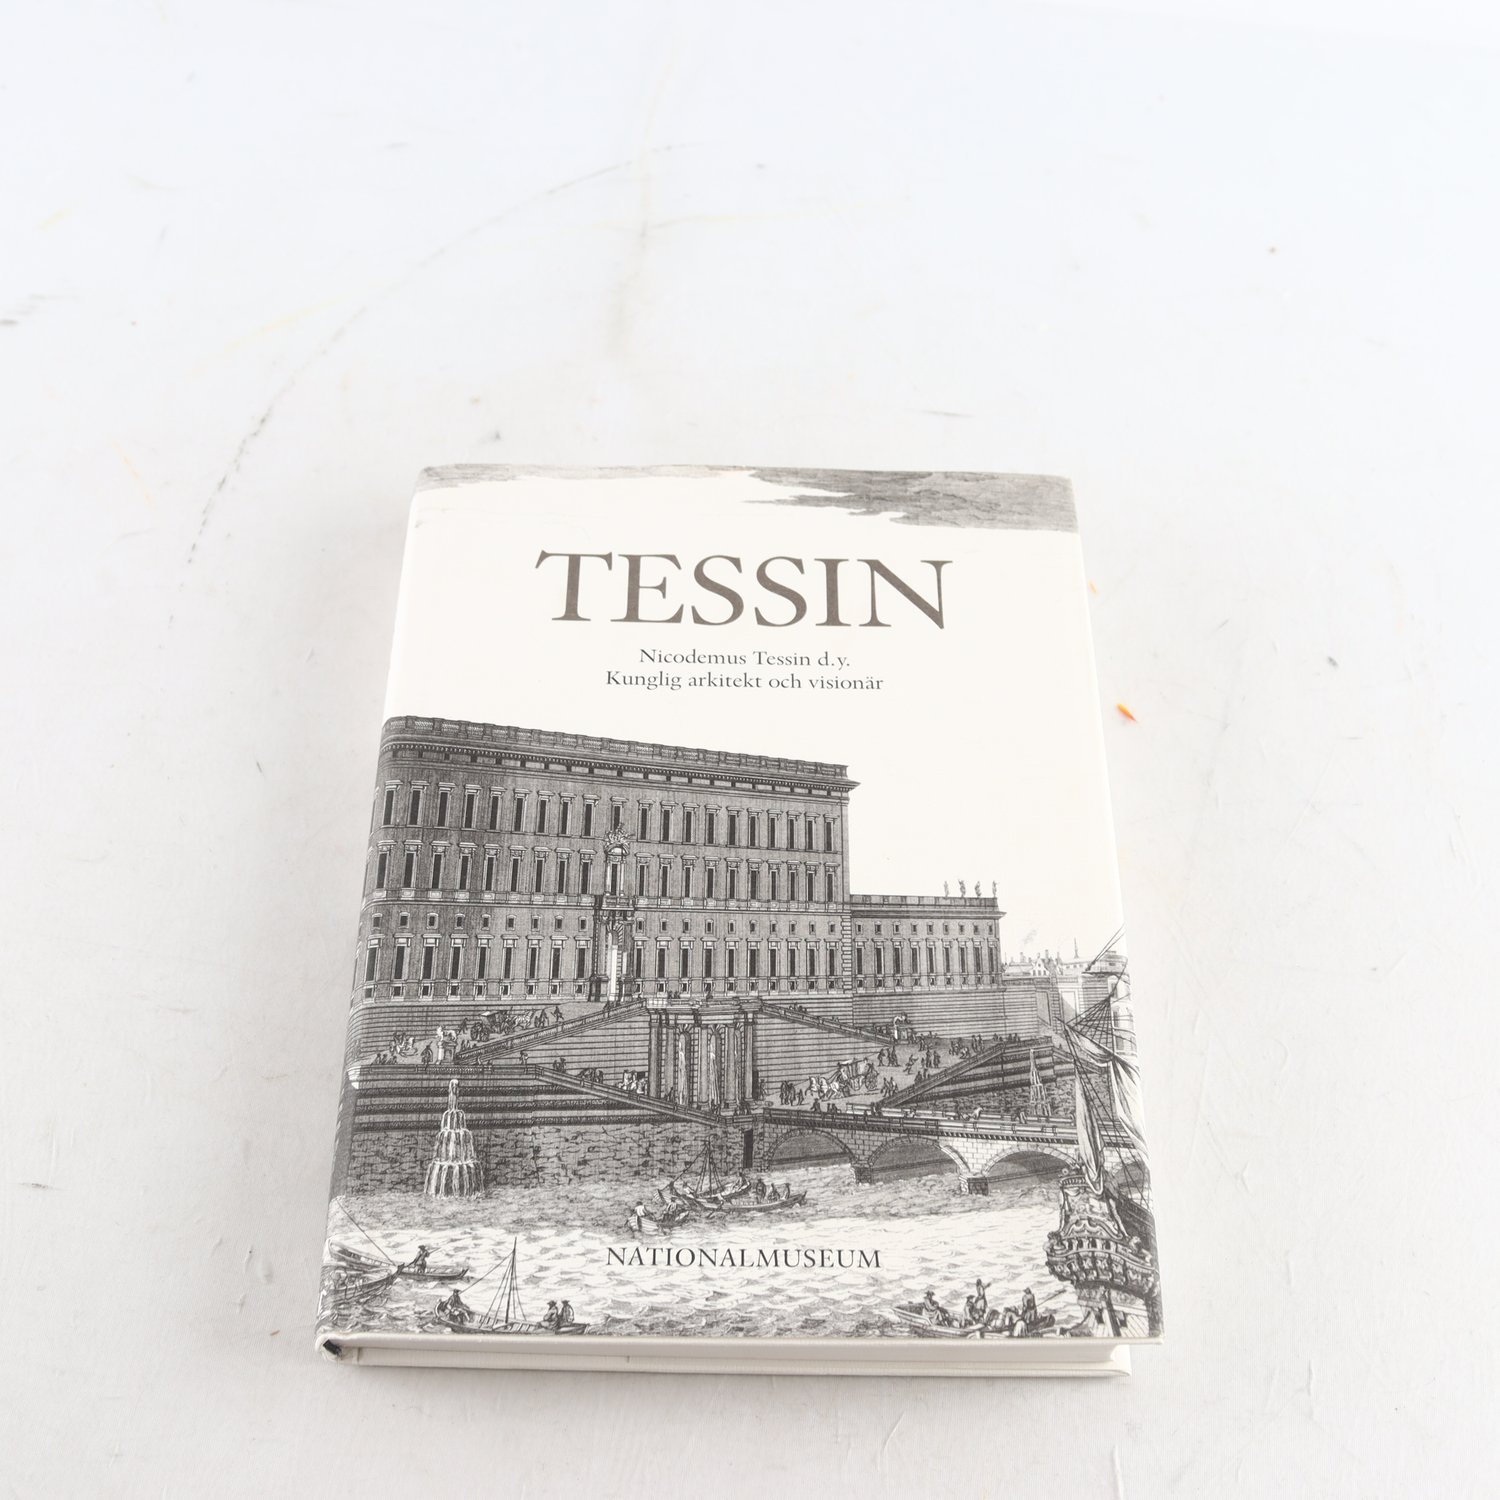 Tessin: Nicodemus Tessin d.y., Kunglig arkitekt och visionär